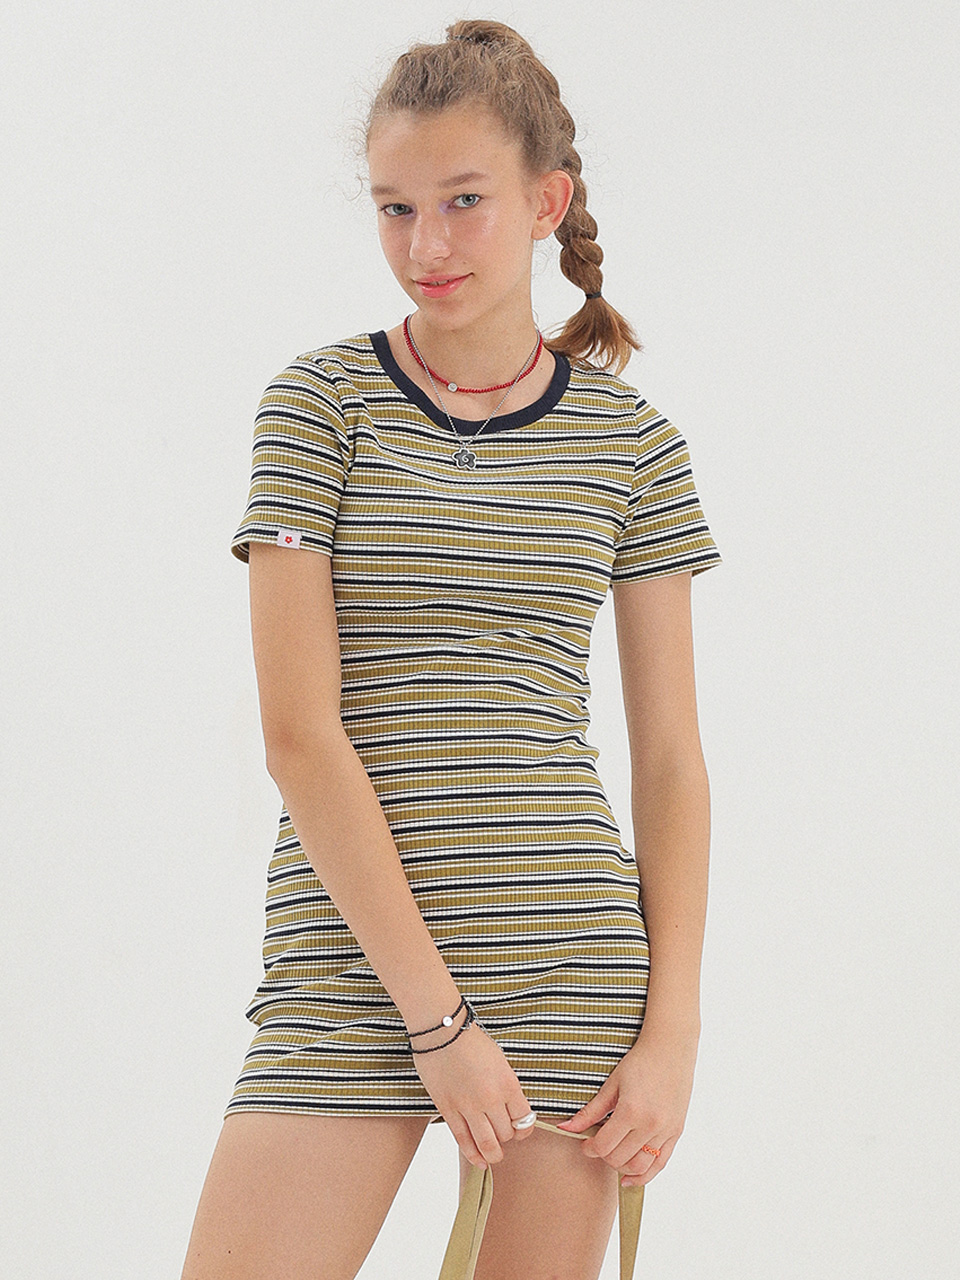 Stripe Dress_Olive